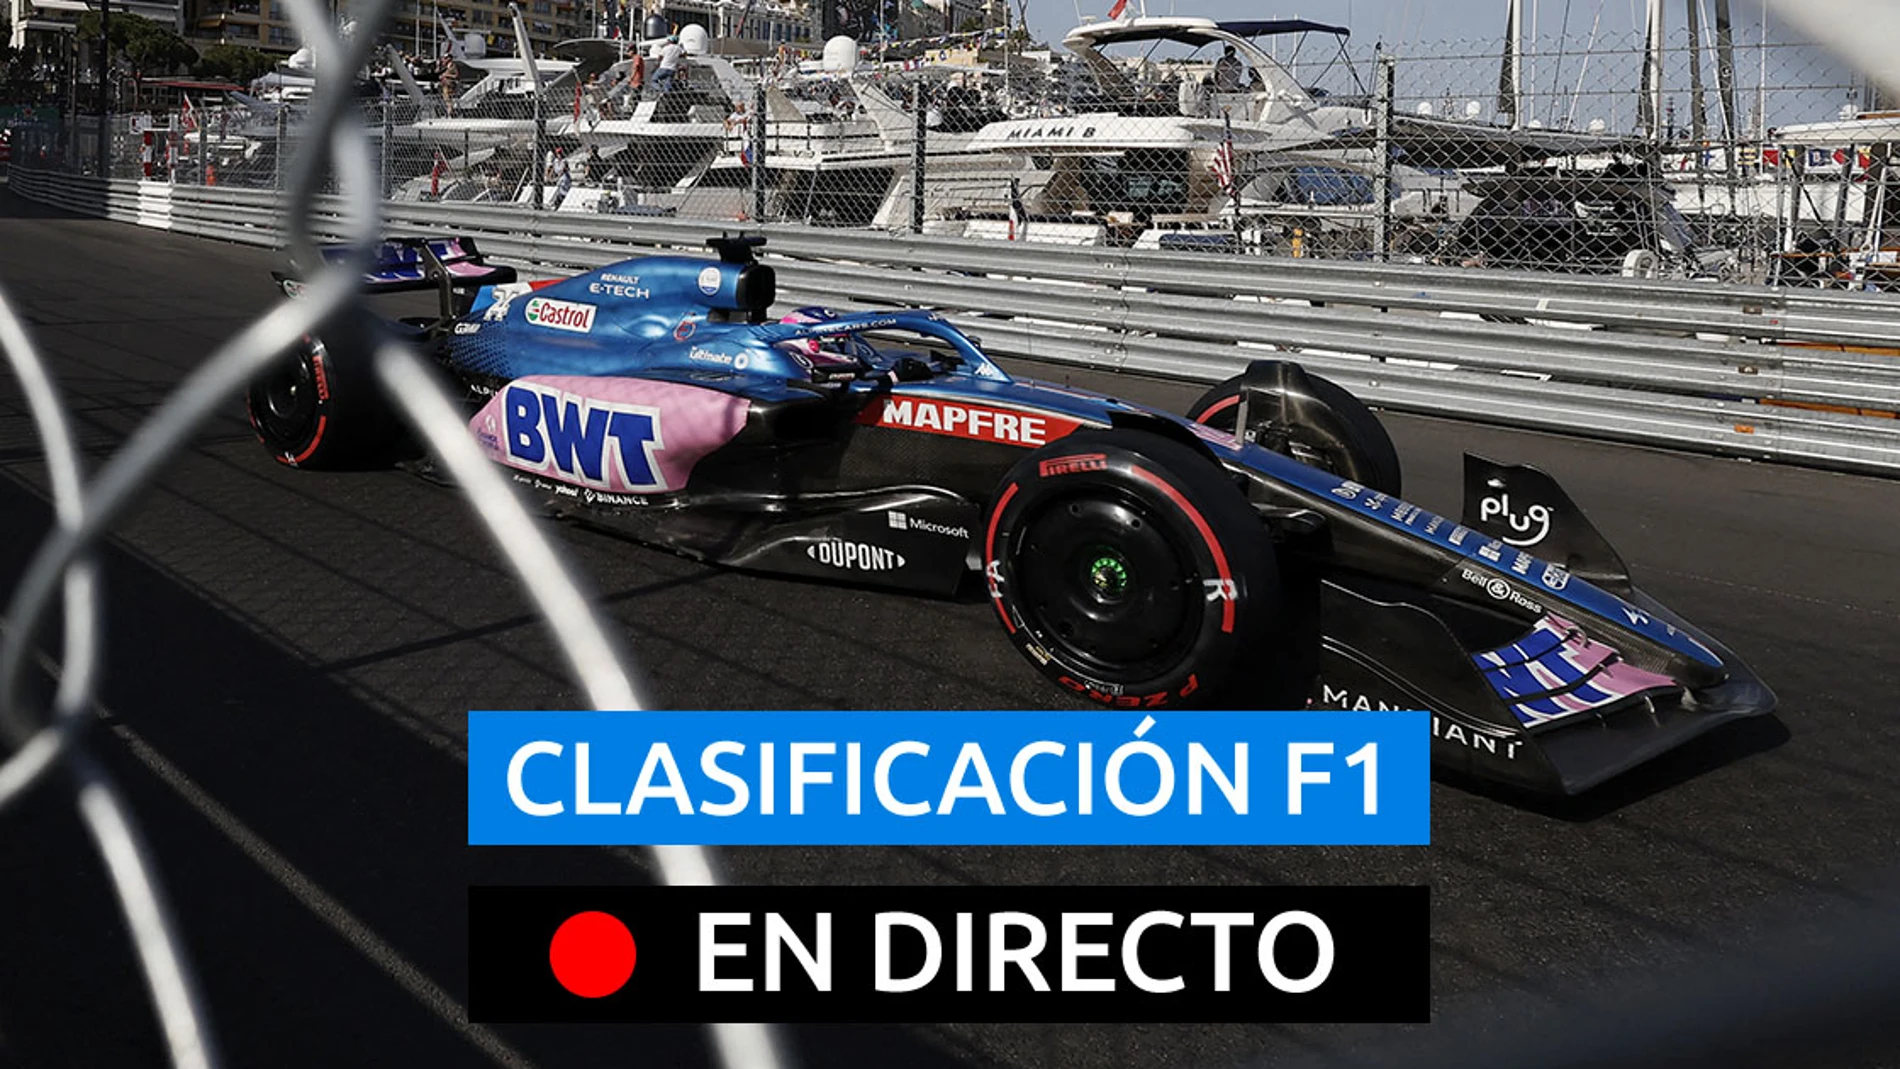 F1 Mónaco Hoy 2022, en directo I Clasificación Fórmula 1 en el GP